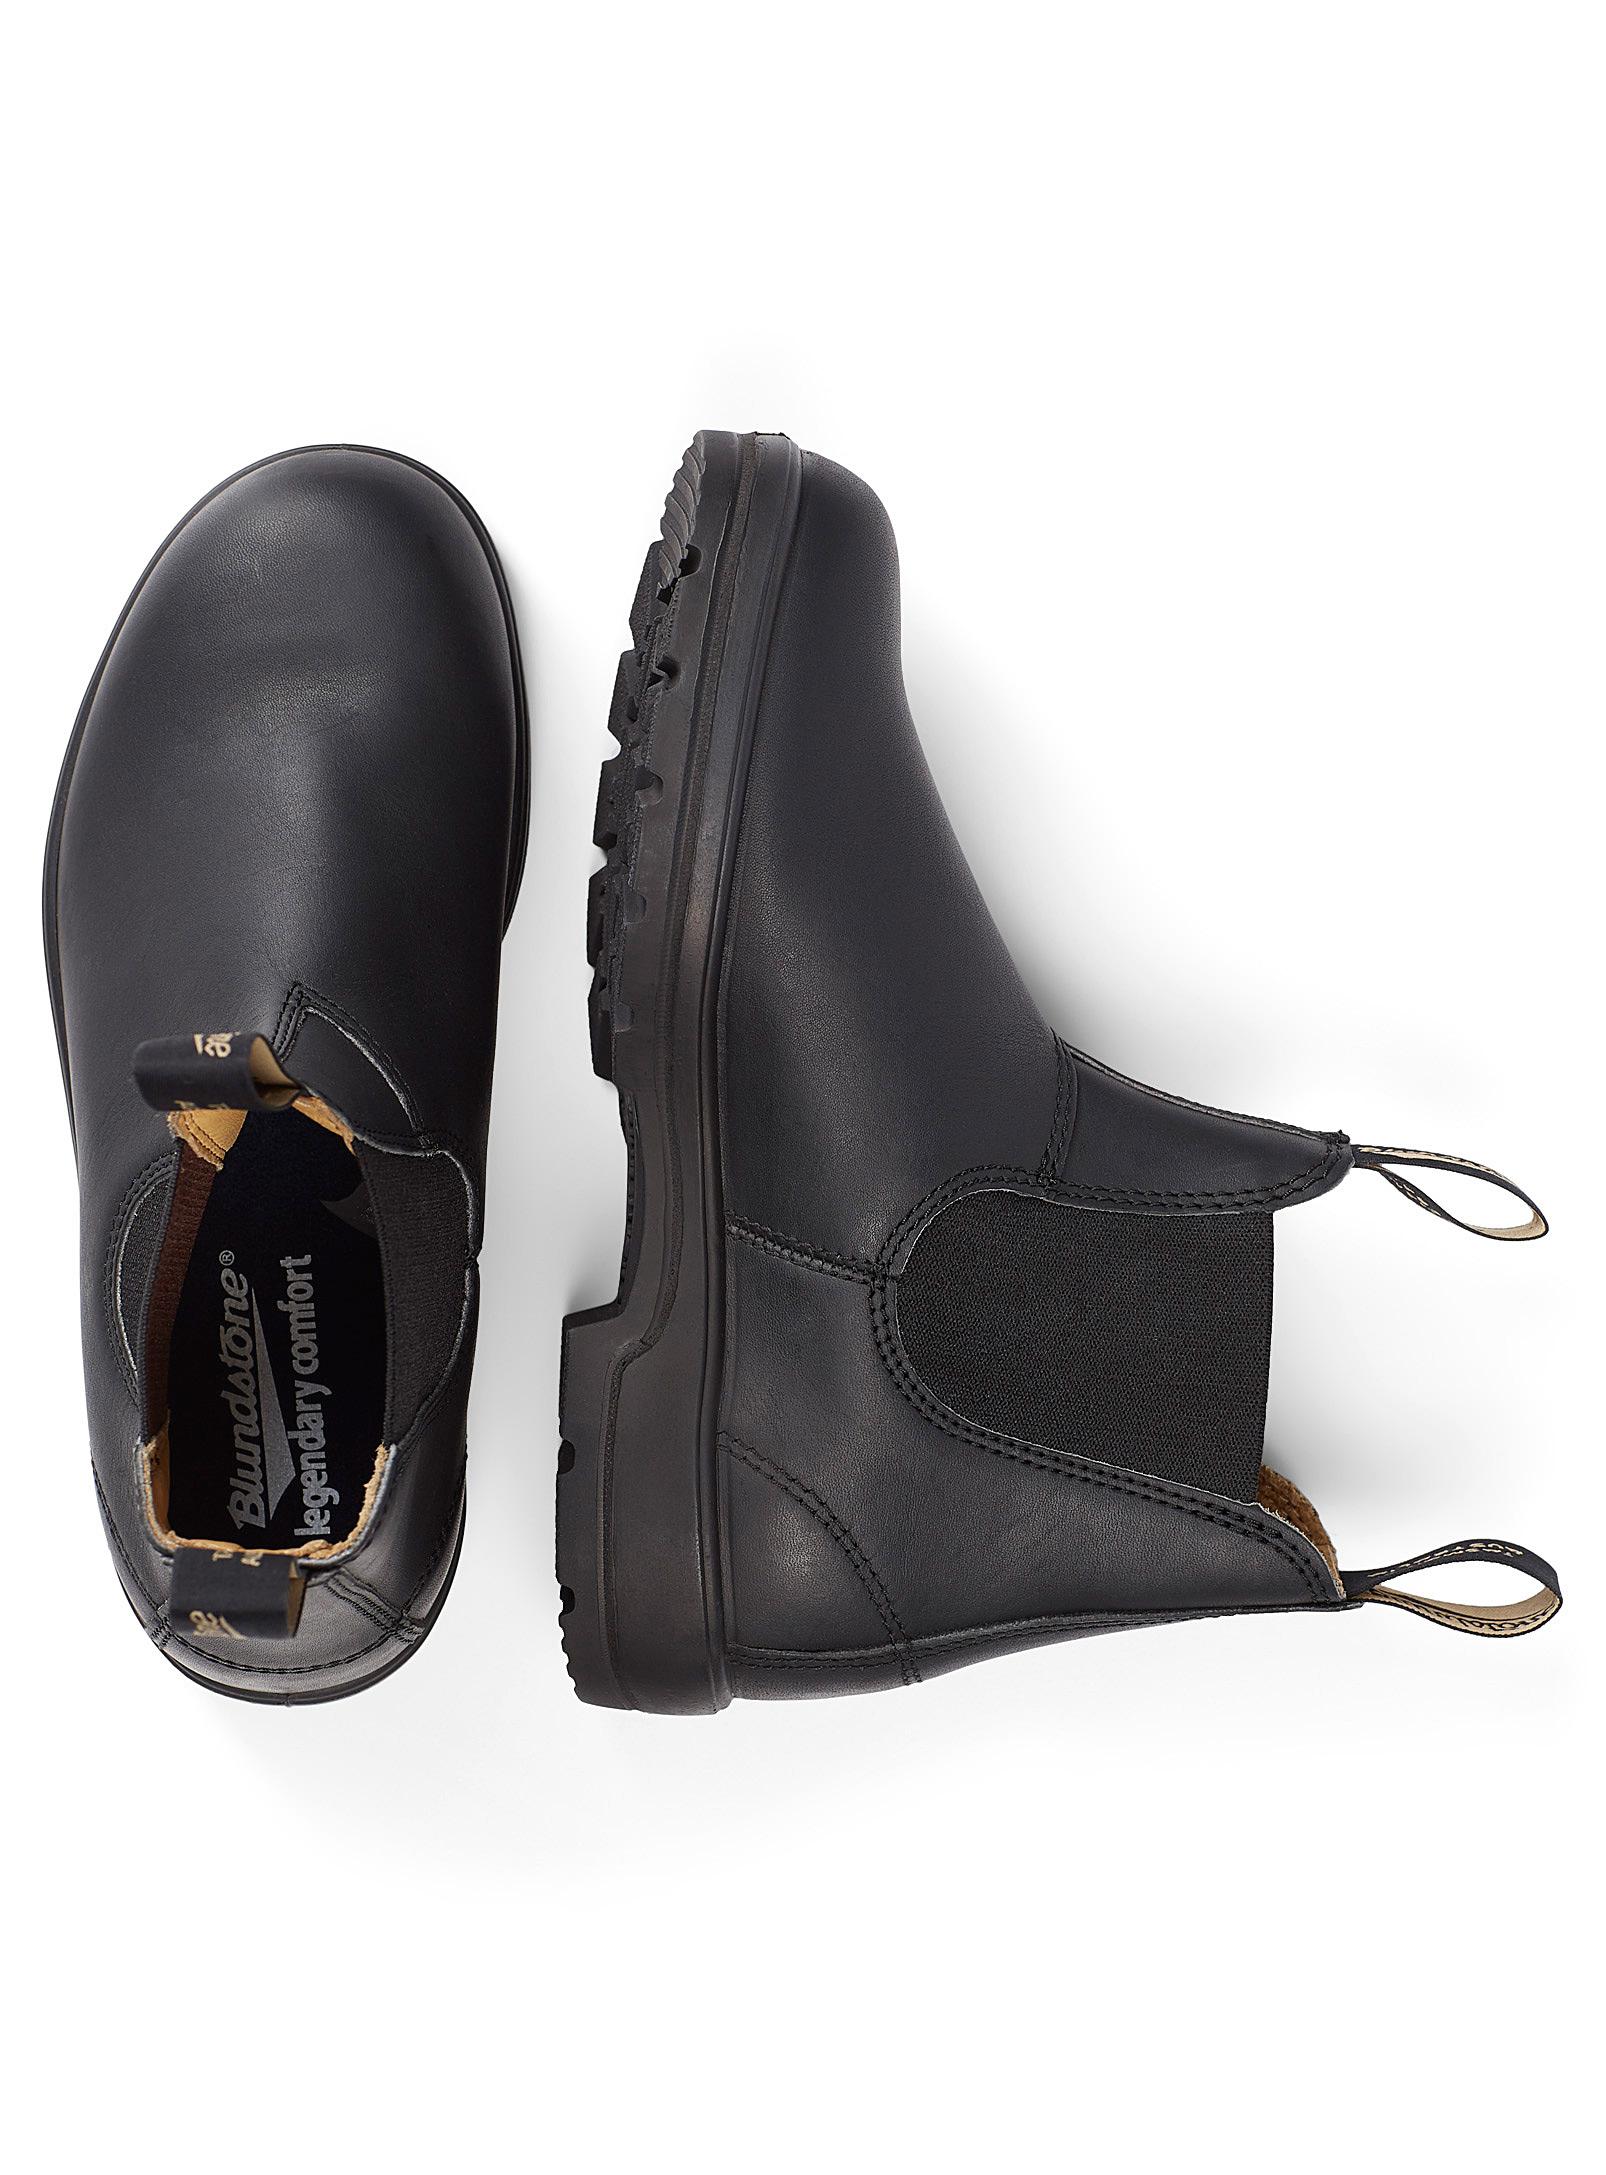 Blundstone Leather 558 Chelsea Boots Women in Black - Lyst